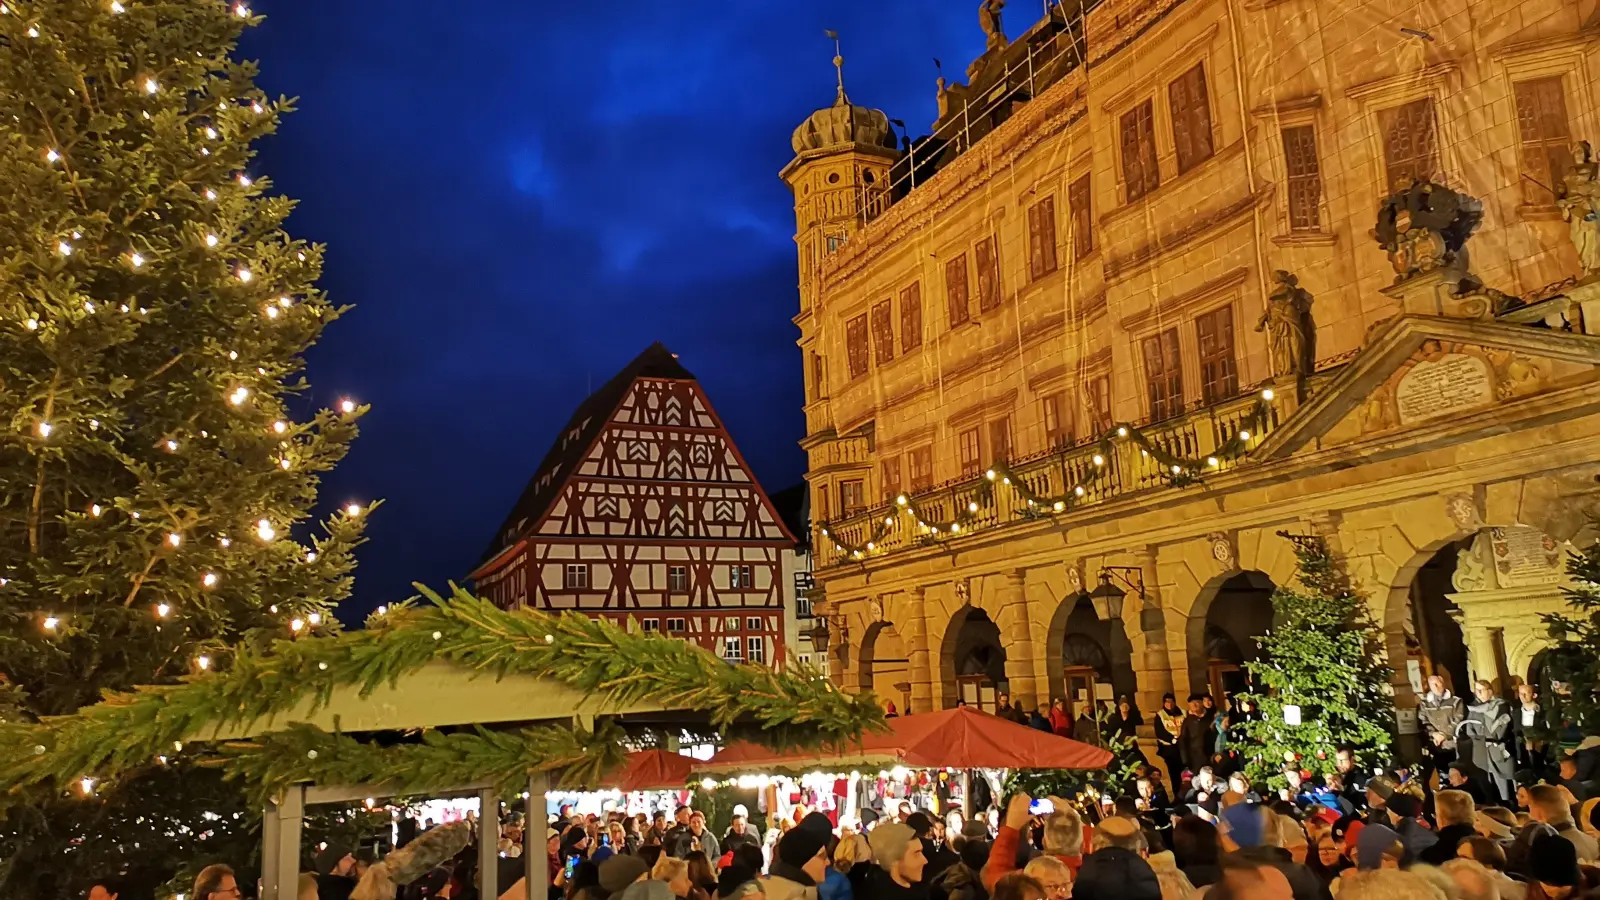  Besonders in den Abendstunden versammelten sich zahlreiche Menschen auf dem Reiterlesmarkt vor der stimmungsvollen Altstadt-Kulisse und genossen dort die weihnachtliche Stimmung. (Foto: Jürgen Binder)